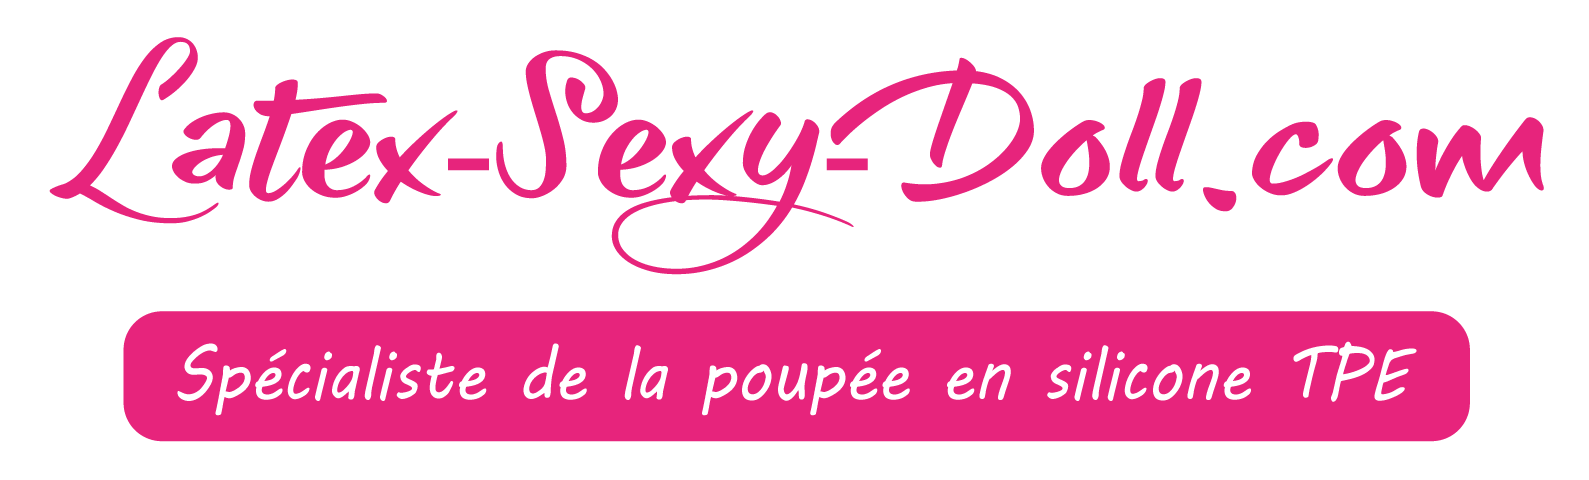 sexy-doll-logo-1505466691